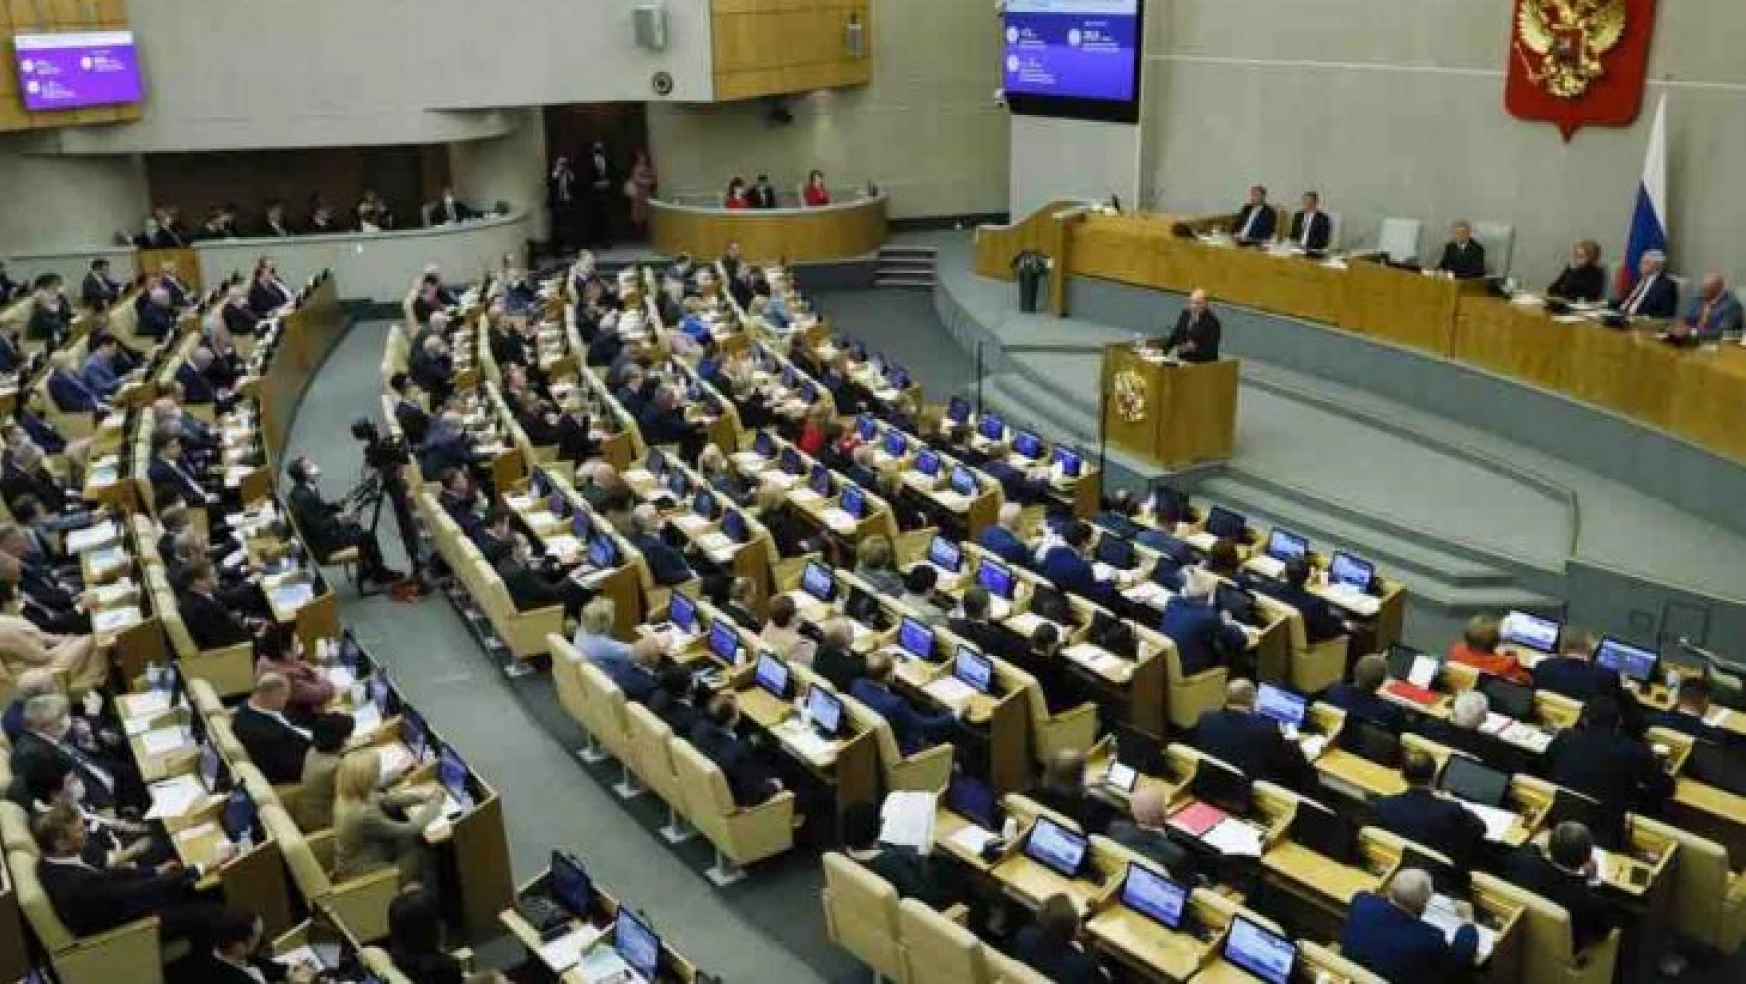 Duma, Rusya'daki yabancı haber kuruluşlarının kapatılmasına izin veren yasayı onayladı